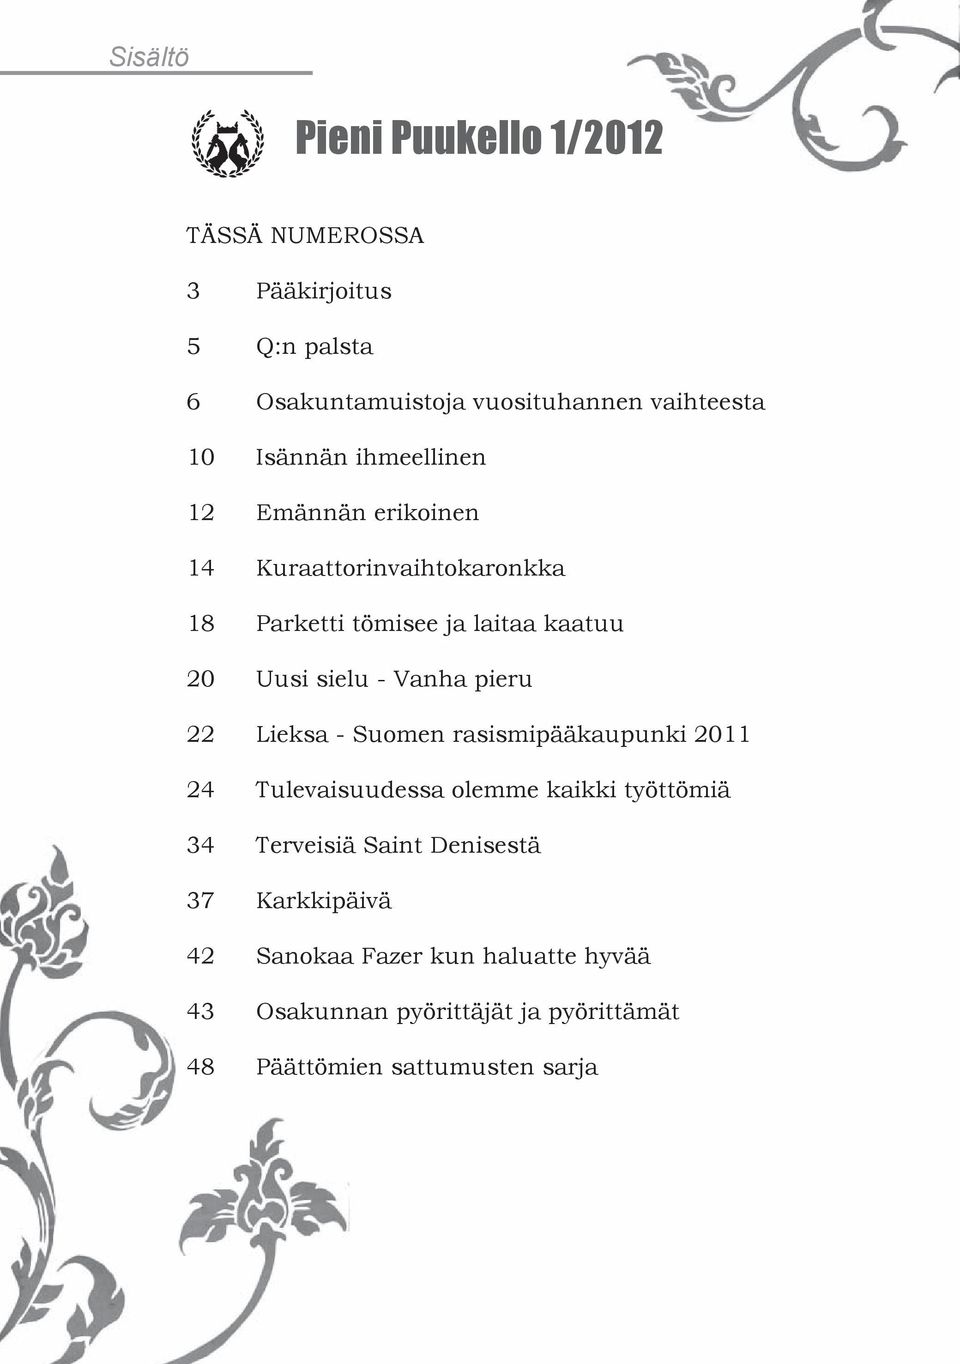 Vanha pieru 22 Lieksa - Suomen rasismipääkaupunki 2011 24 Tulevaisuudessa olemme kaikki työttömiä 34 Terveisiä Saint